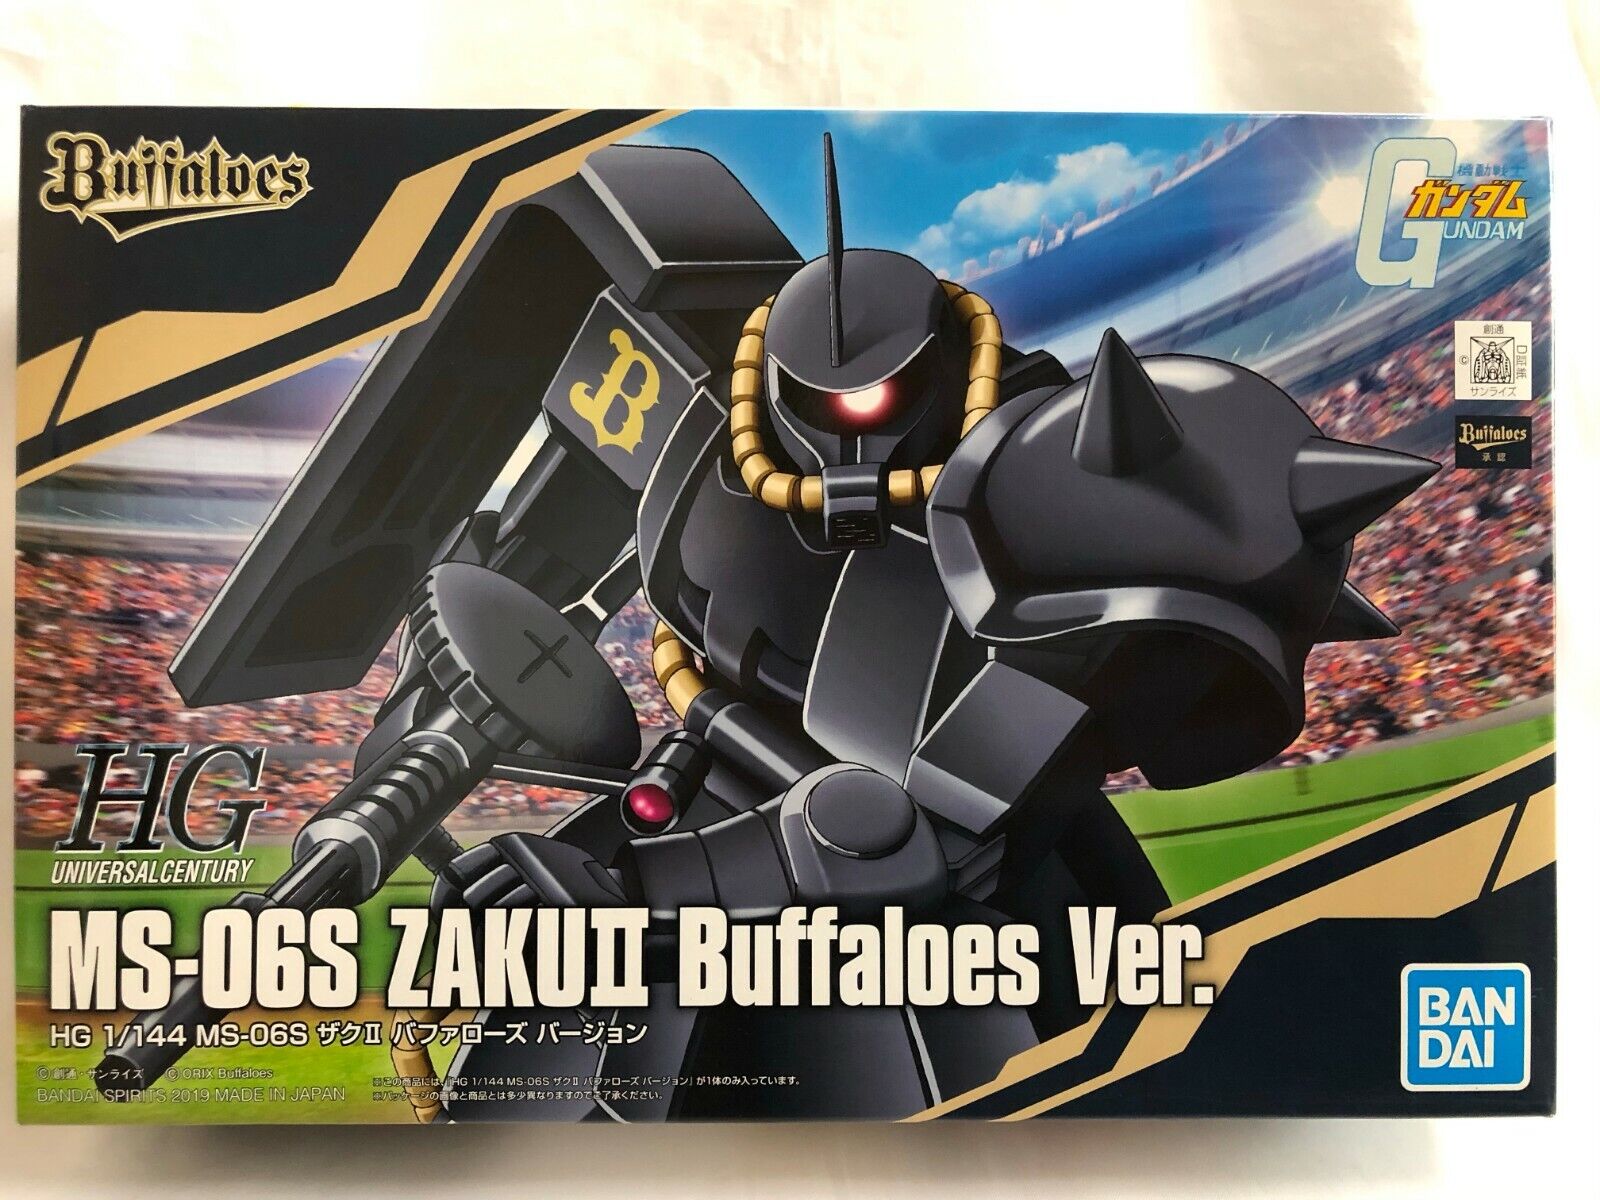 New Bandai HG 1/144 MS-06S Zaku Ⅱ Buffaloes ver. Model Kit limited edition